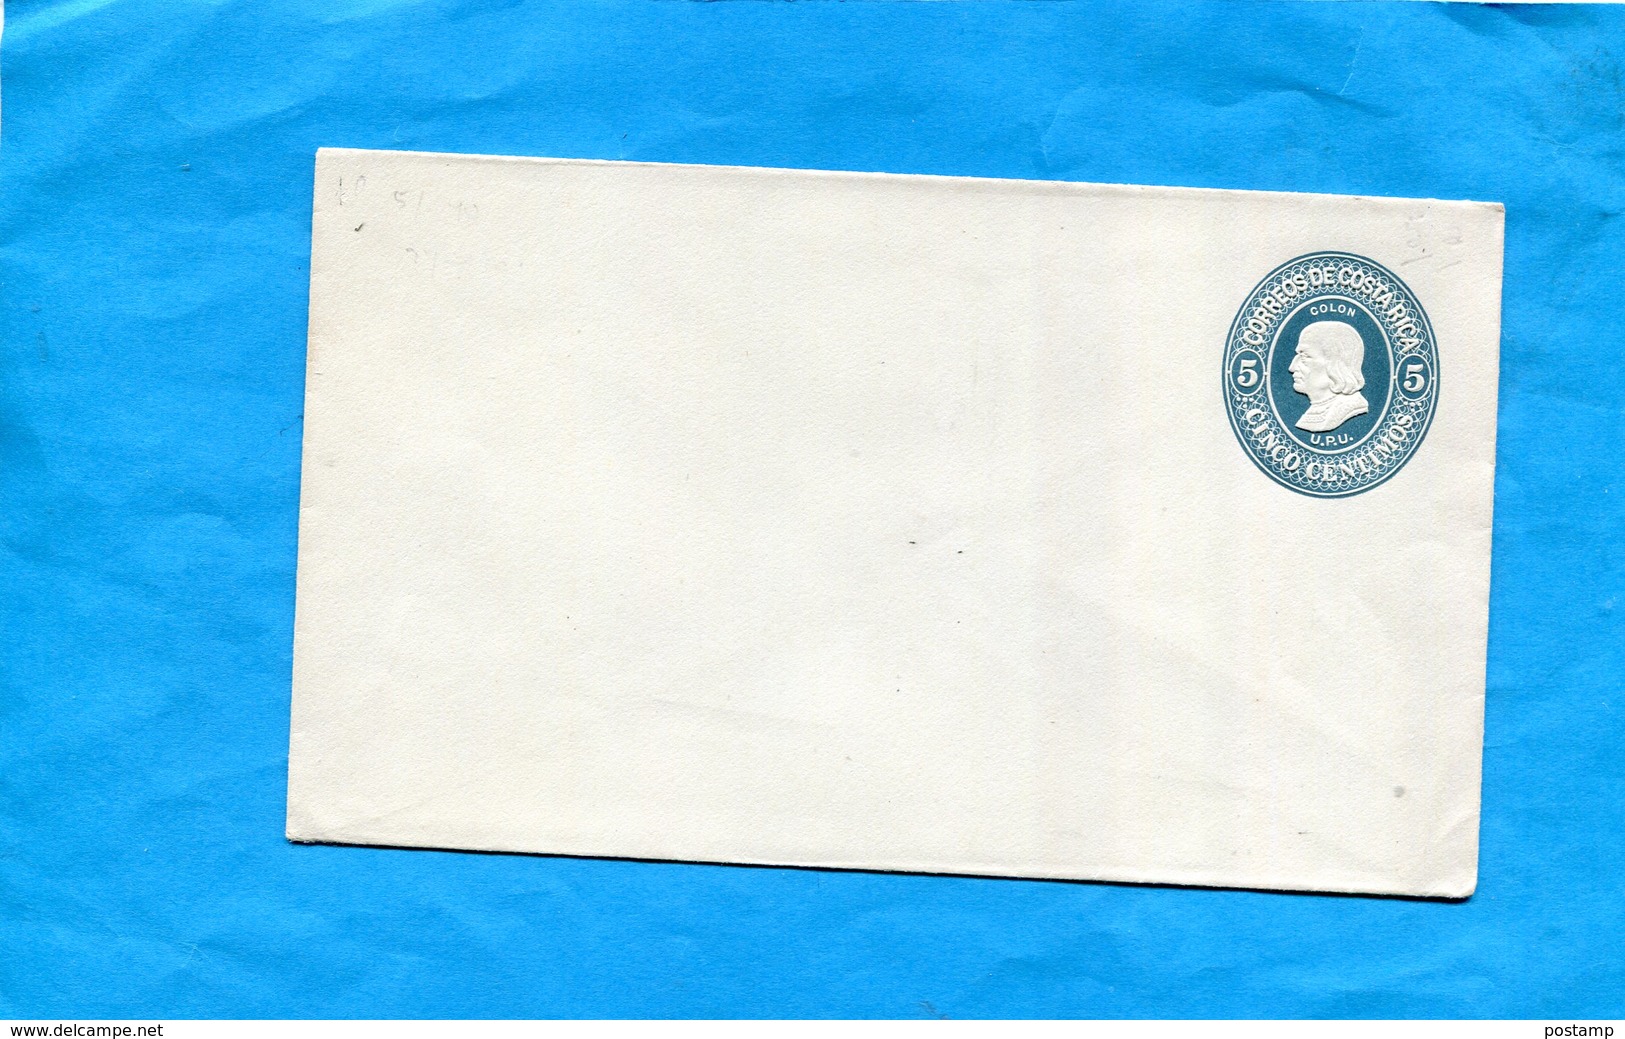 COSTA RICA-Enveloppe-Entier Postal- Stationnery-1895 U P U Colon***5c Bleu Gaufré - Costa Rica